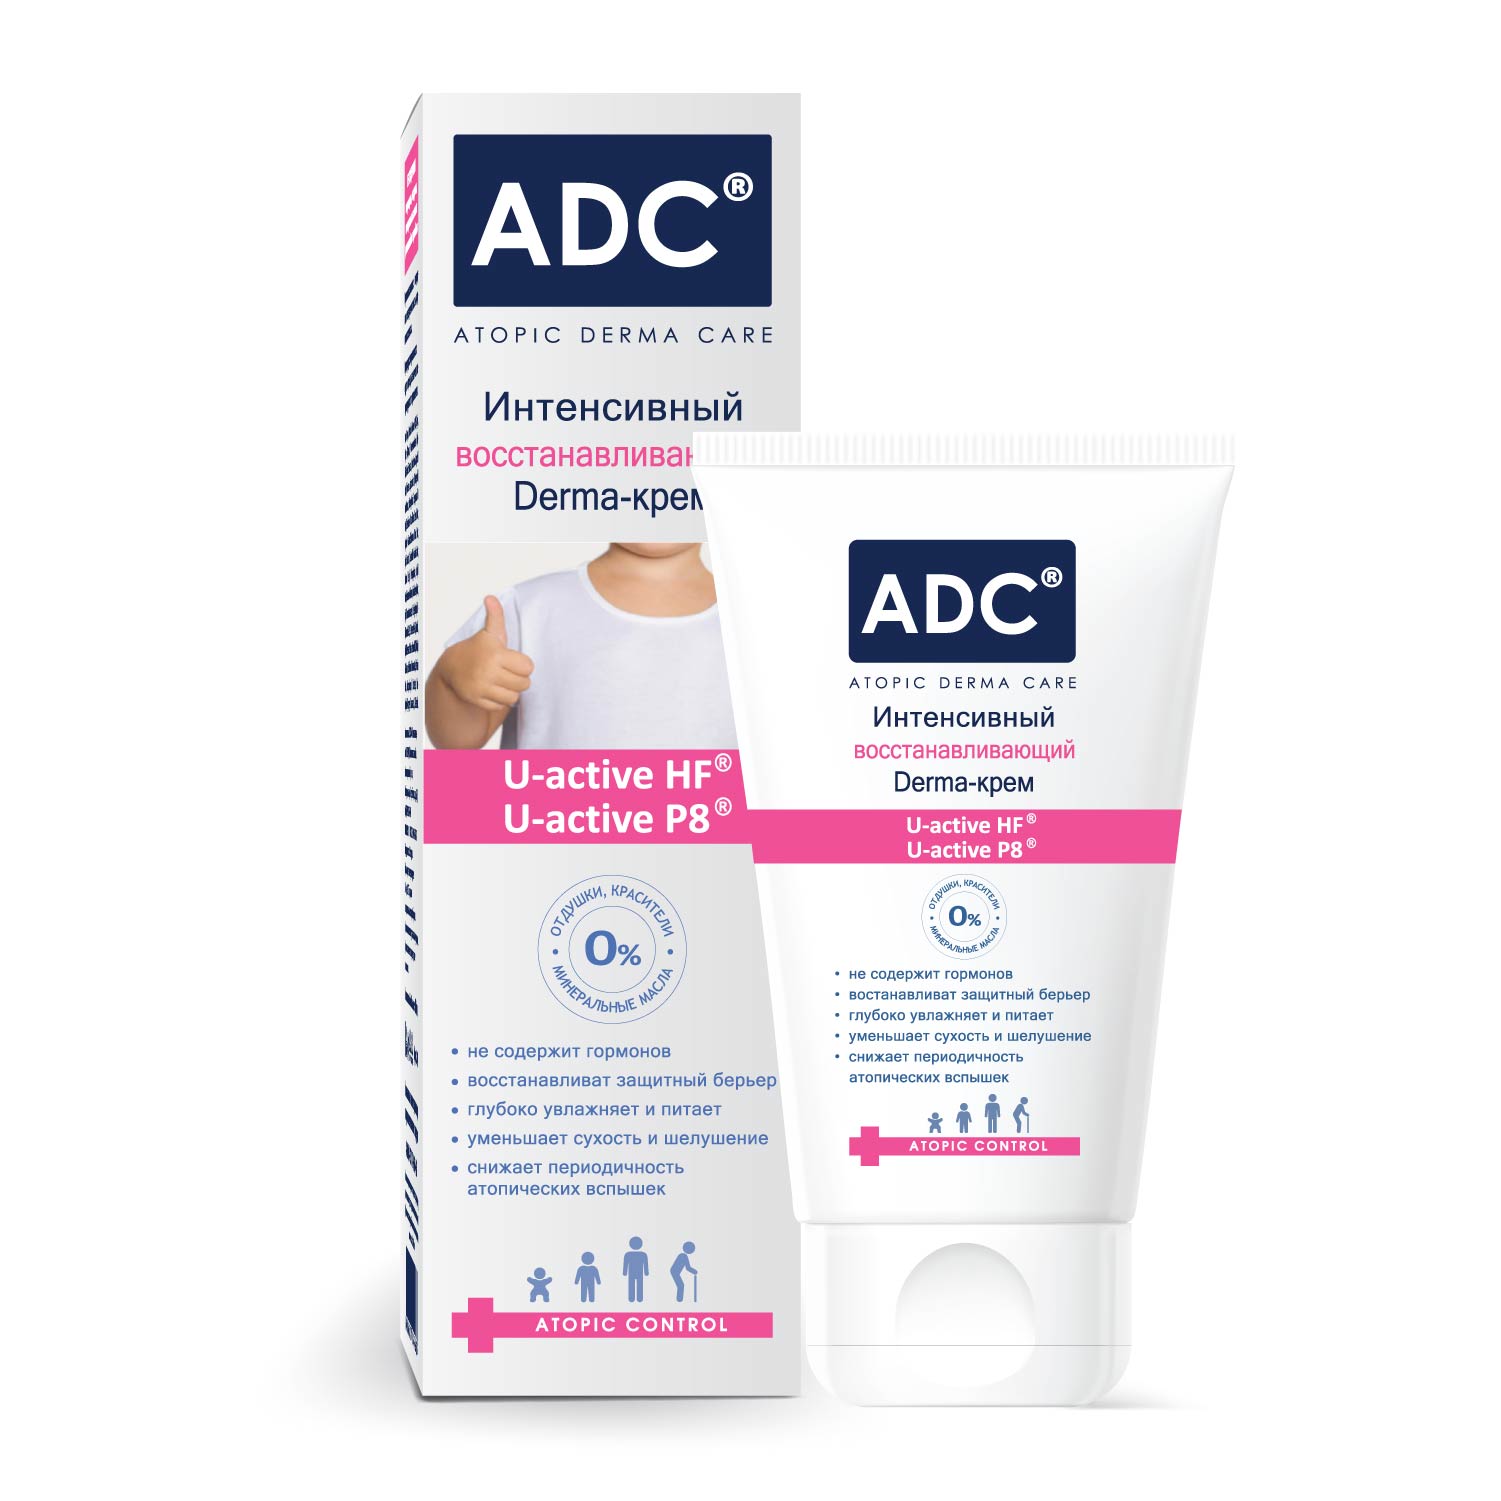 Интенсивный восстанавливающий Derma-крем серии ADC, 40 мл.